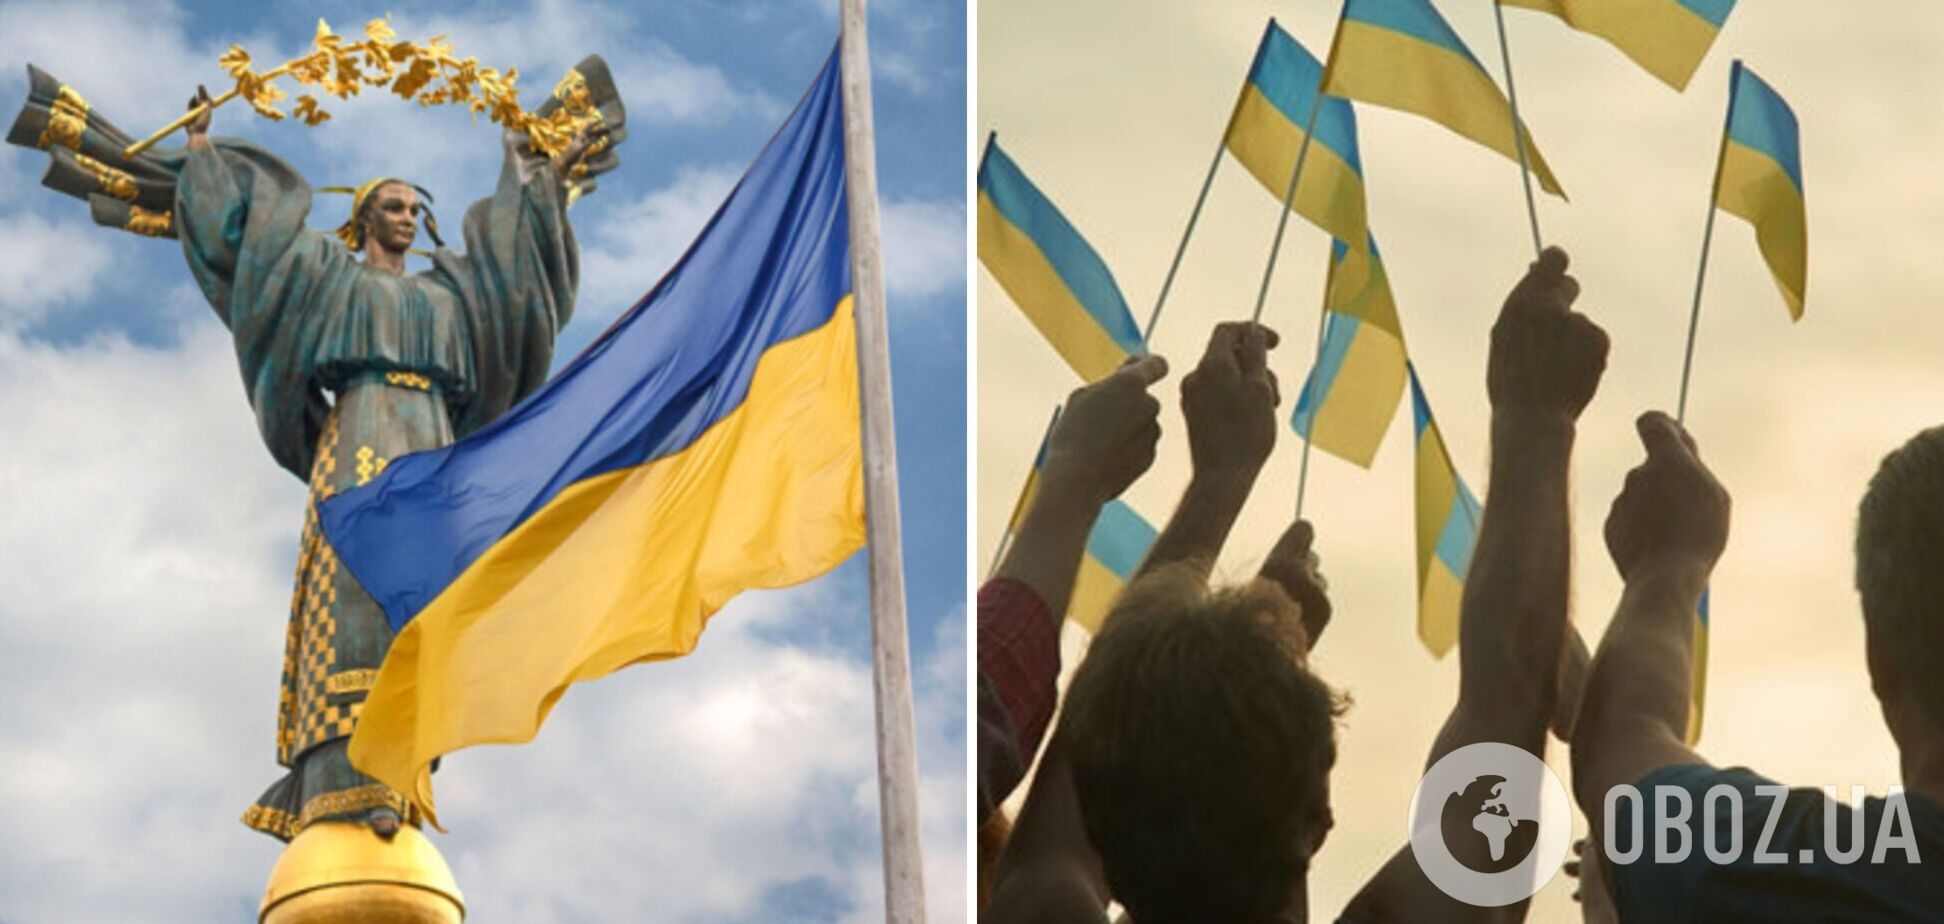 89% молоді бачить майбутнє України обнадійливим: результати опитування